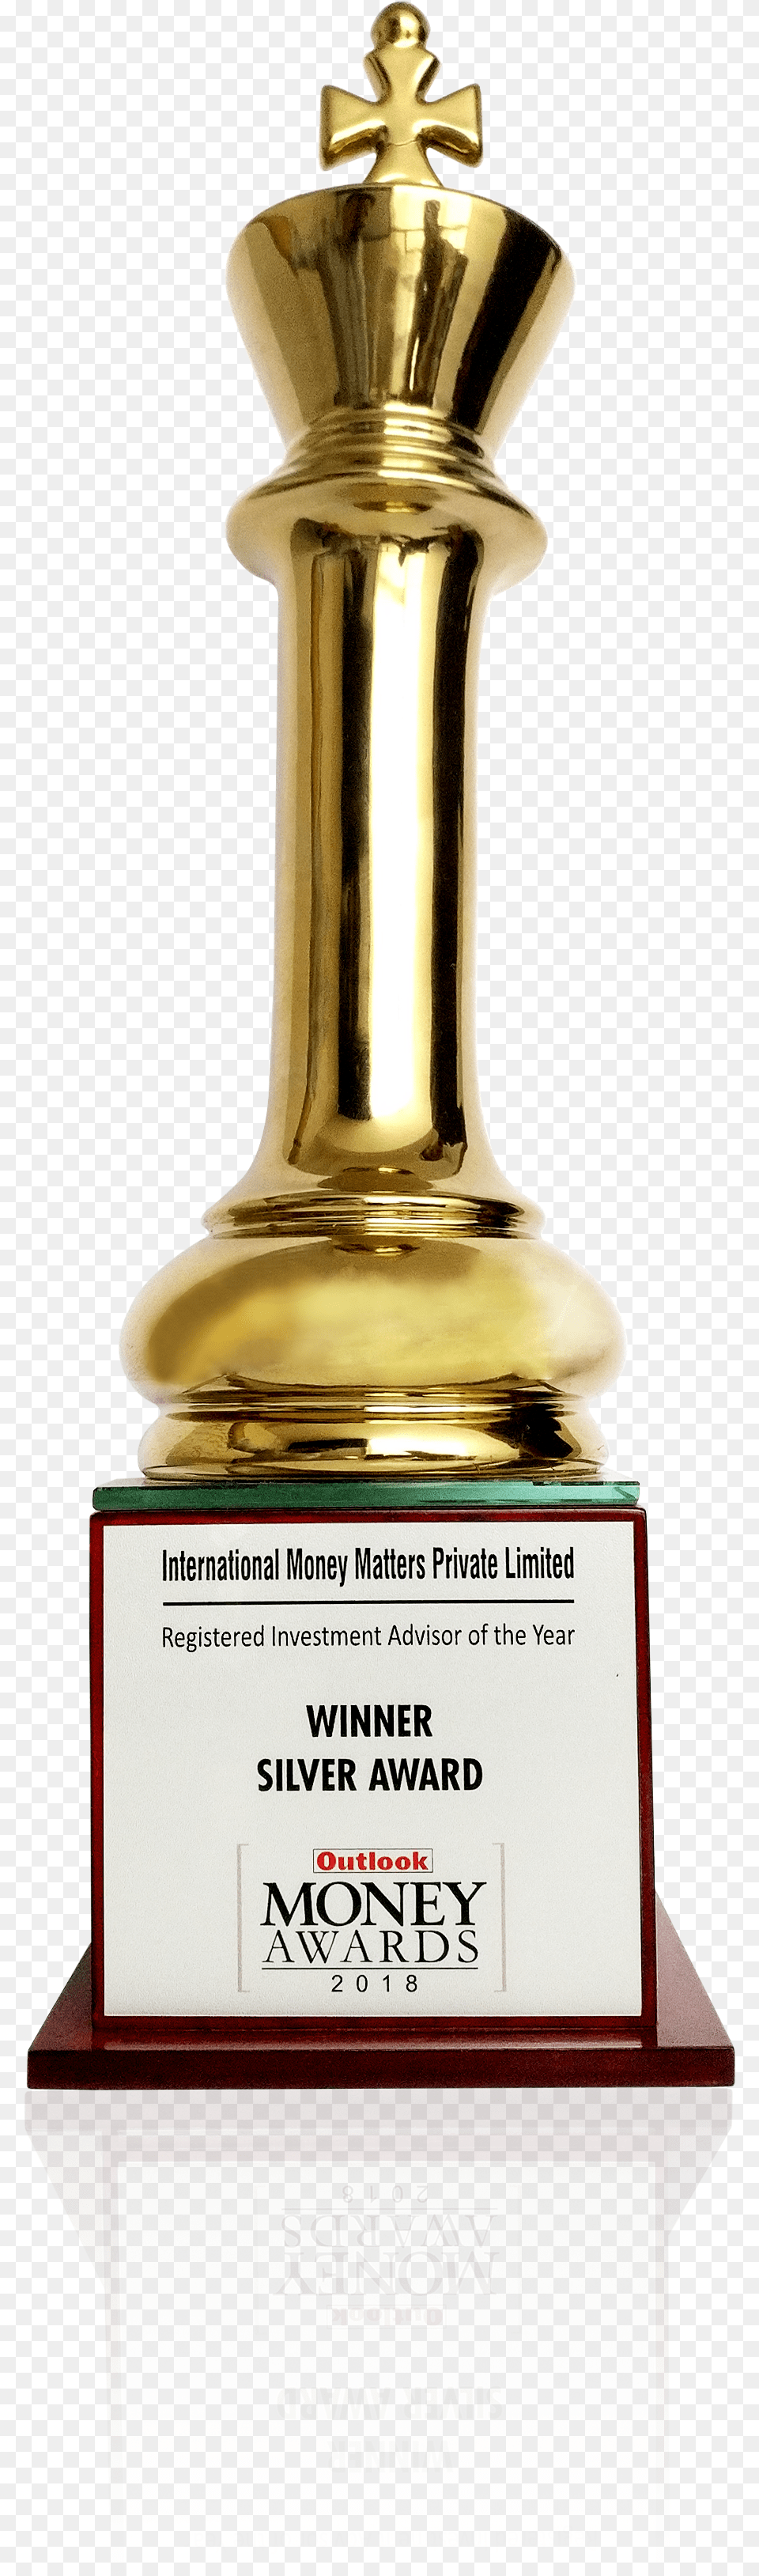 Award Trophy, Smoke Pipe Free Png Download